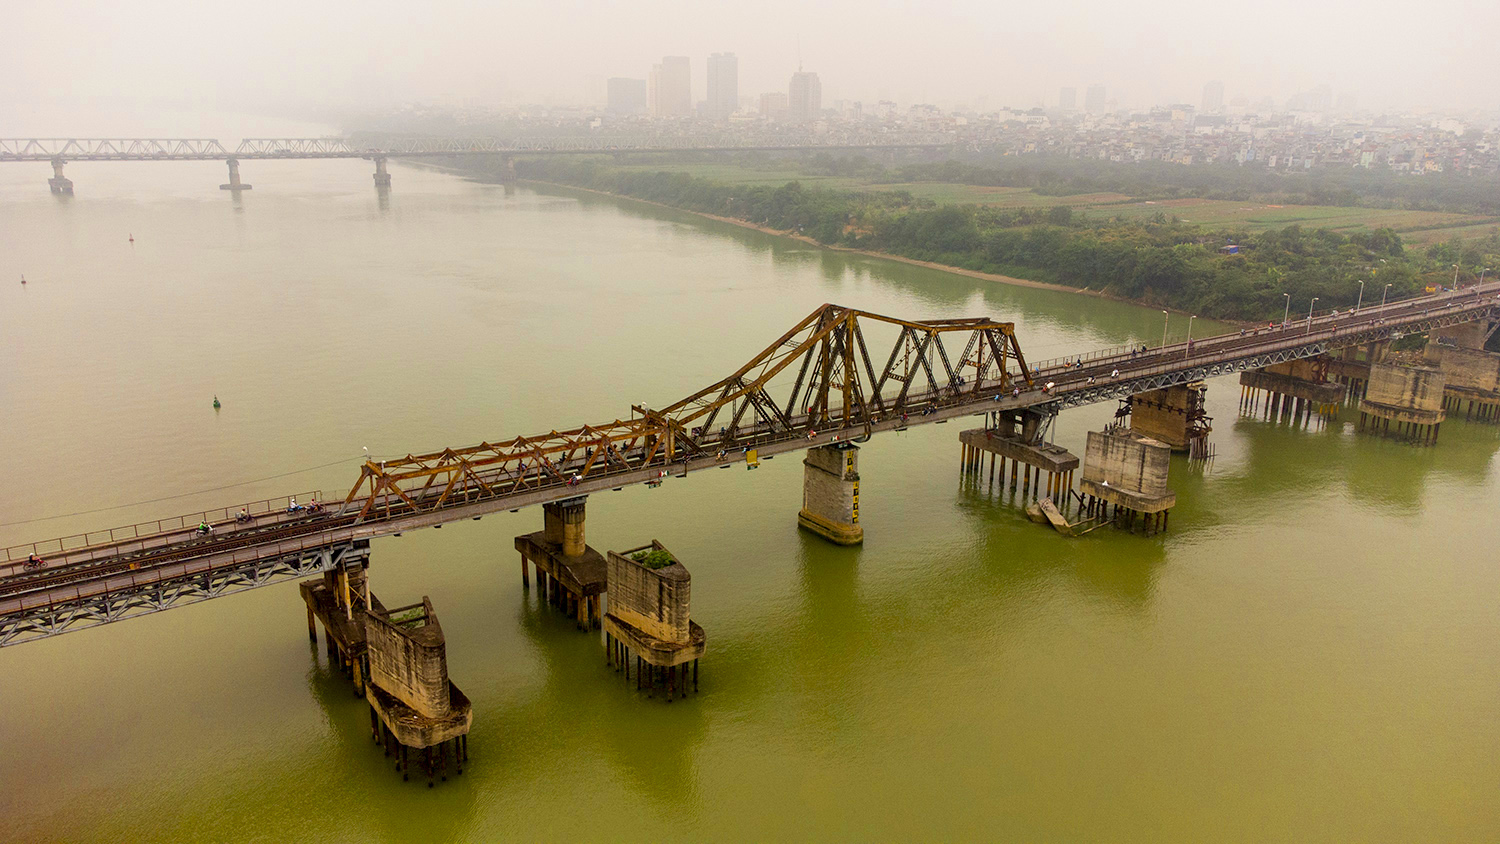 Cầu Long Biên là cây cầu thép đầu tiên bắc ngang qua sông Hồng, nối hai quận Long Biên và Hoàn Kiếm của thành phố Hà Nội.